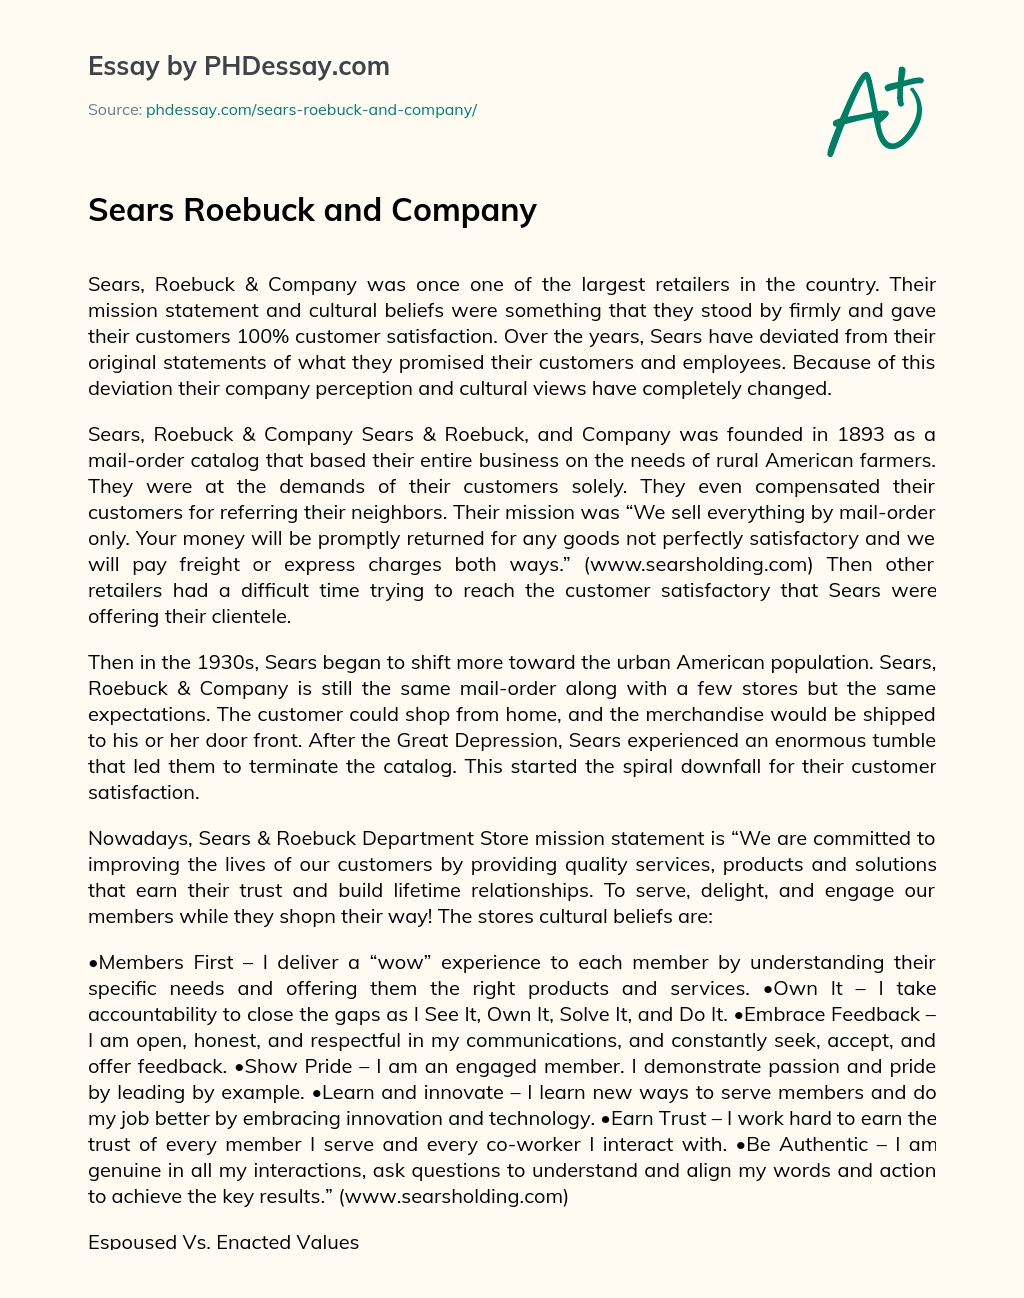 Sears Roebuck and Company essay